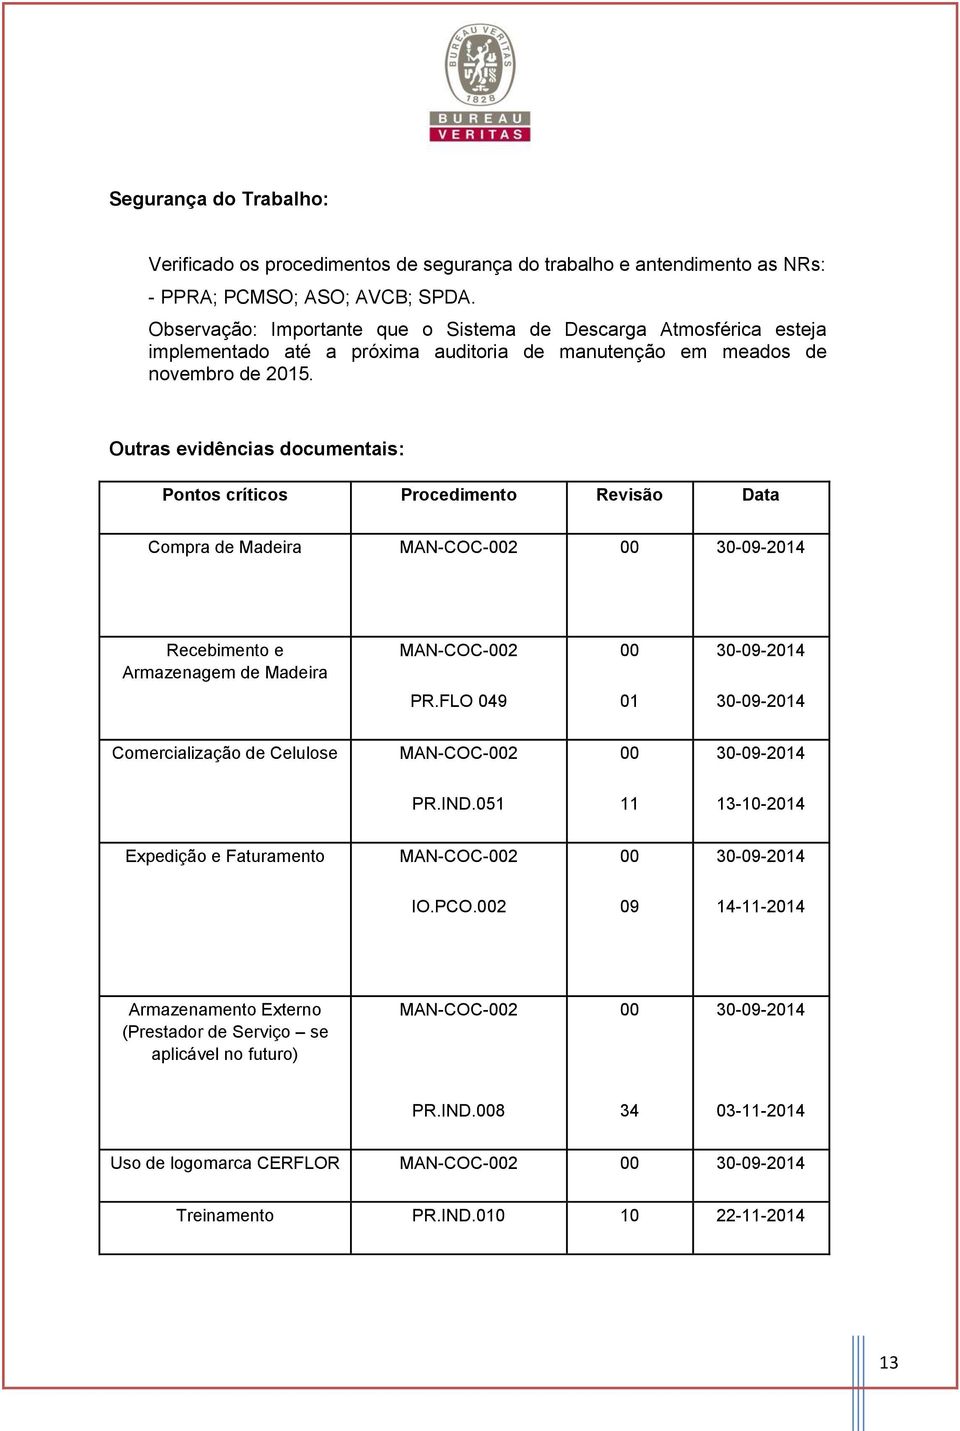 Outras evidências documentais: Pontos críticos Procedimento Revisão Data Compra de Madeira MAN-COC-002 00 30-09-2014 Recebimento e Armazenagem de Madeira MAN-COC-002 00 30-09-2014 PR.